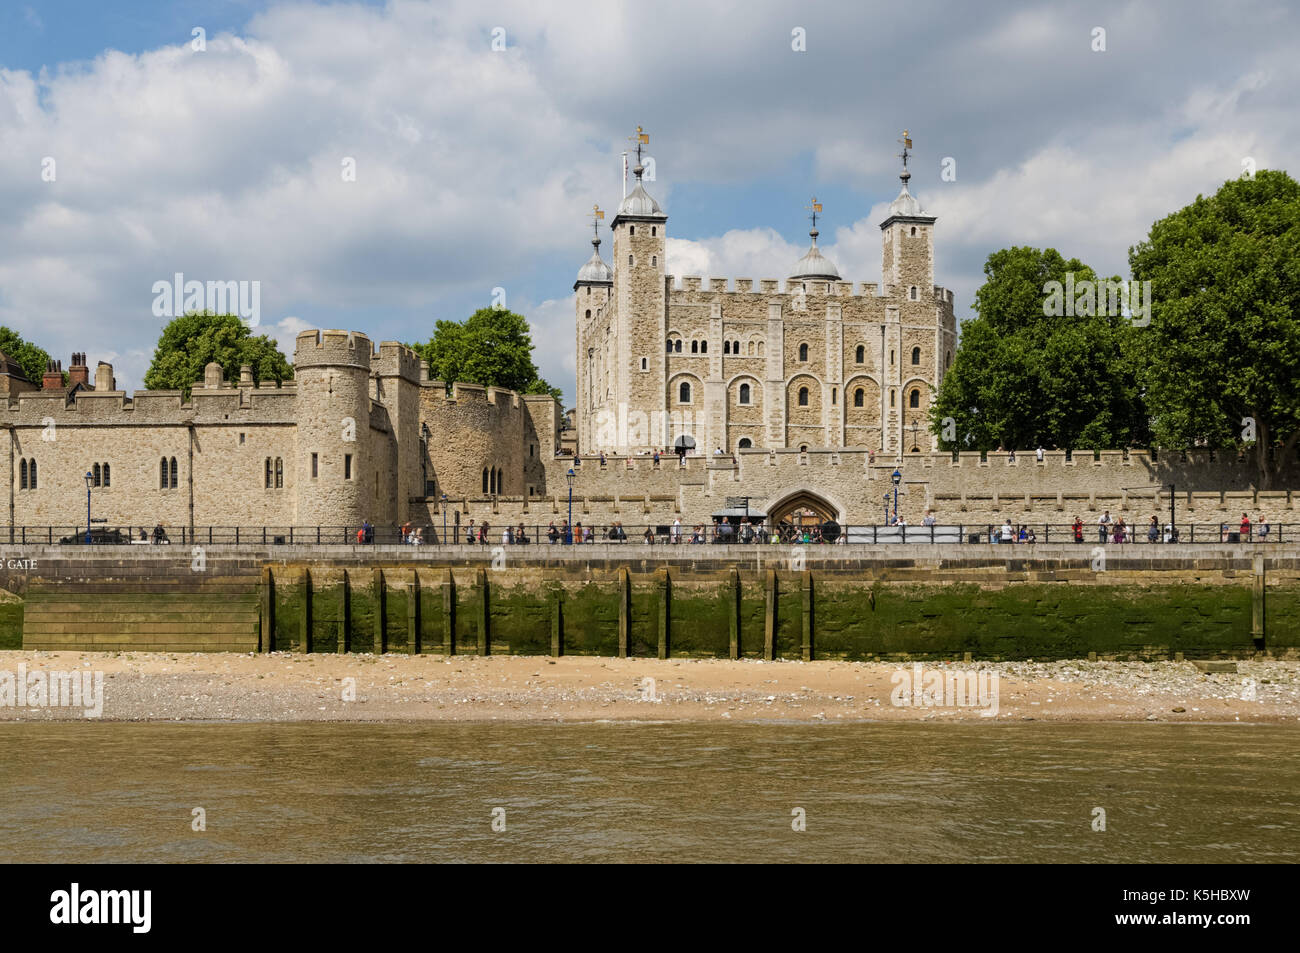 The Tower of London, London England United Kingdom UK Stock Photo